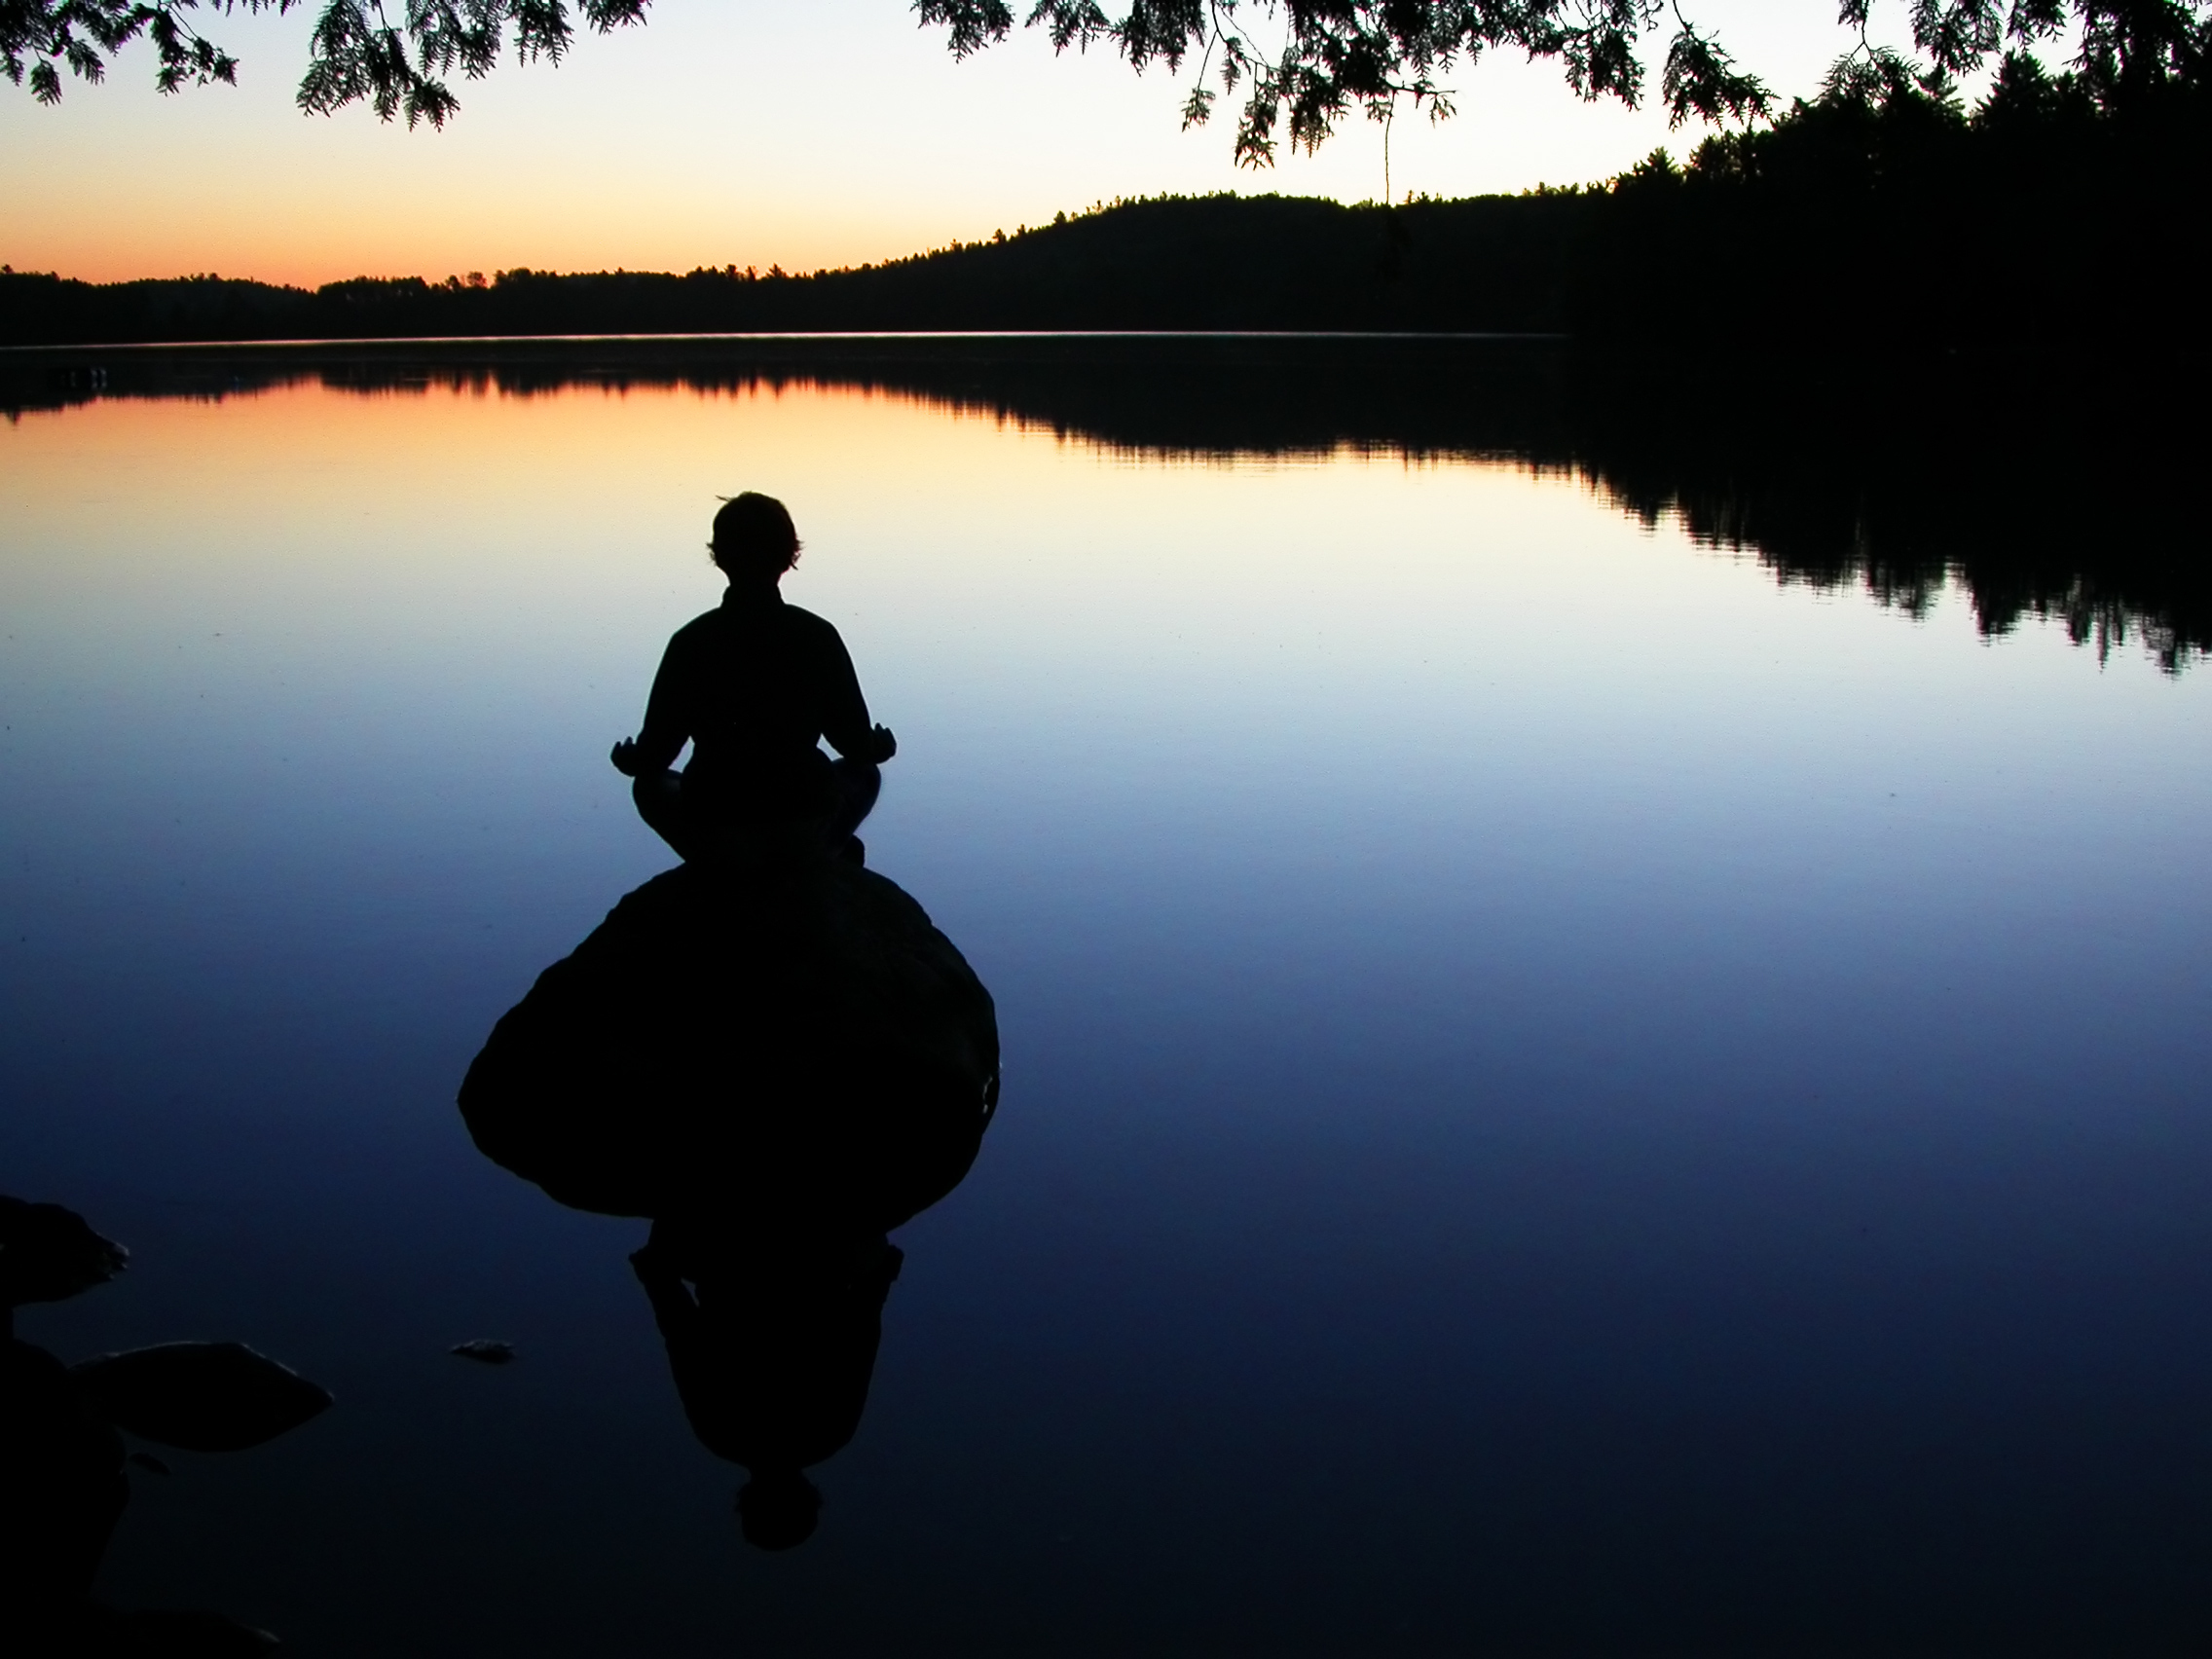 " Mindfulness oefeningen geven mij de rust en ontspanning die ik nodig heb. "